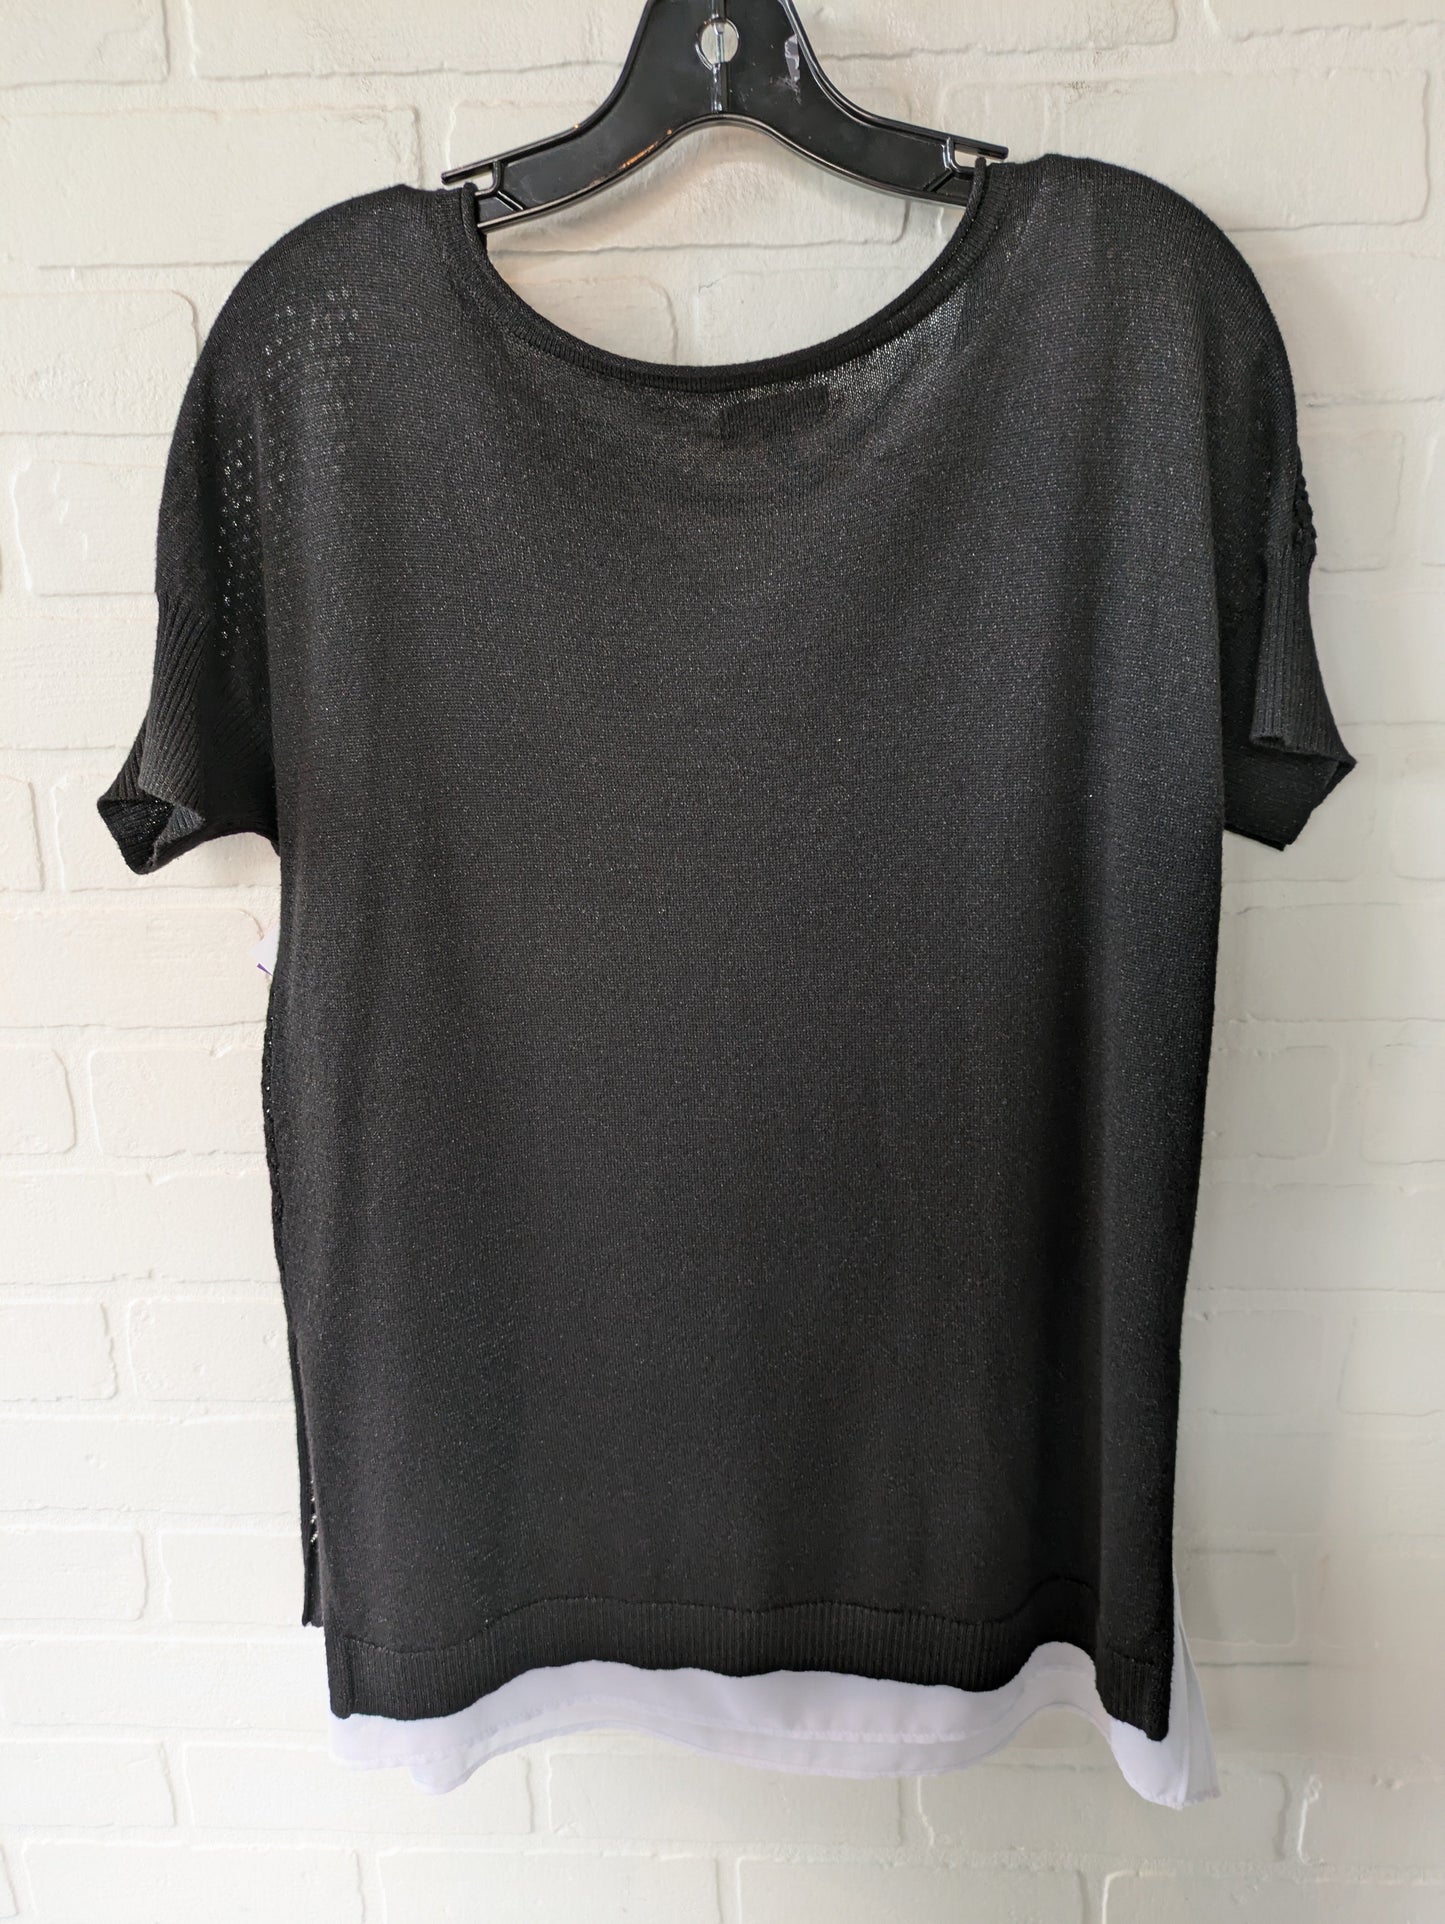 Black & White Sweater Short Sleeve Apt 9, Size M